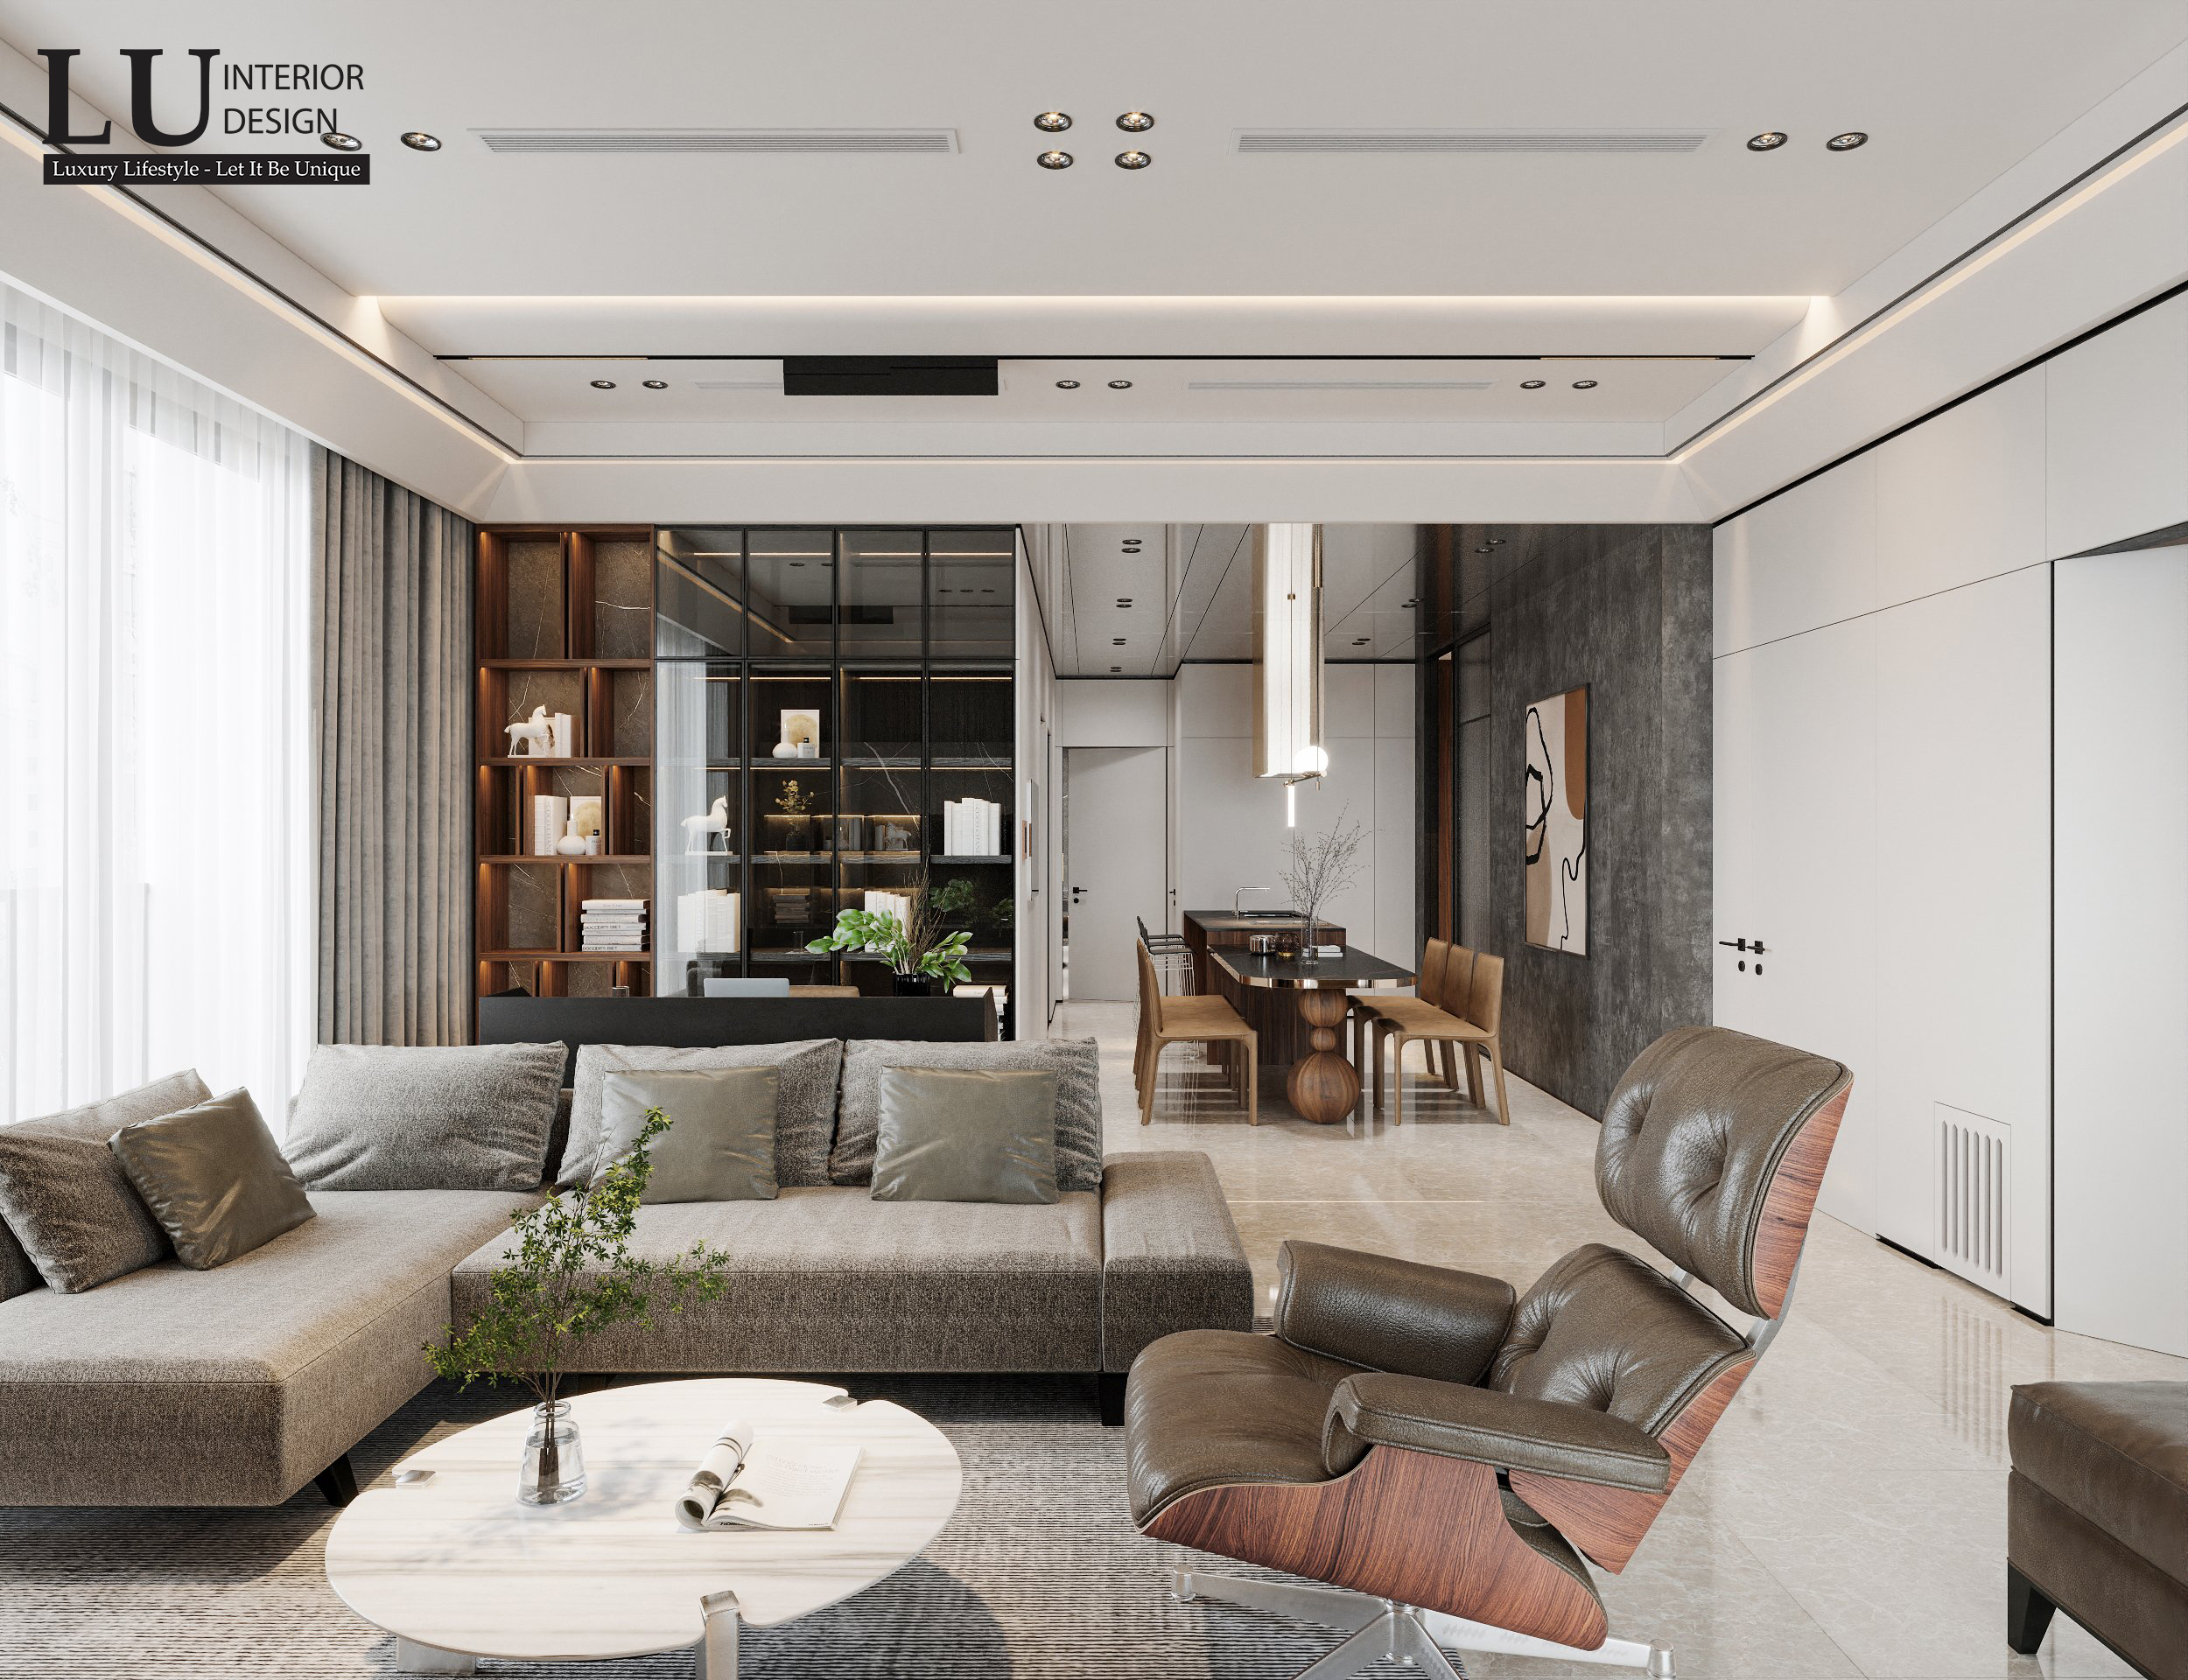 Thiết kế nội thất căn hộ mang vẻ đẹp sang trọng và ấm áp, là không gian sống lý tưởng cho gia đình nhỏ | Căn hộ The Marq - LU Design.